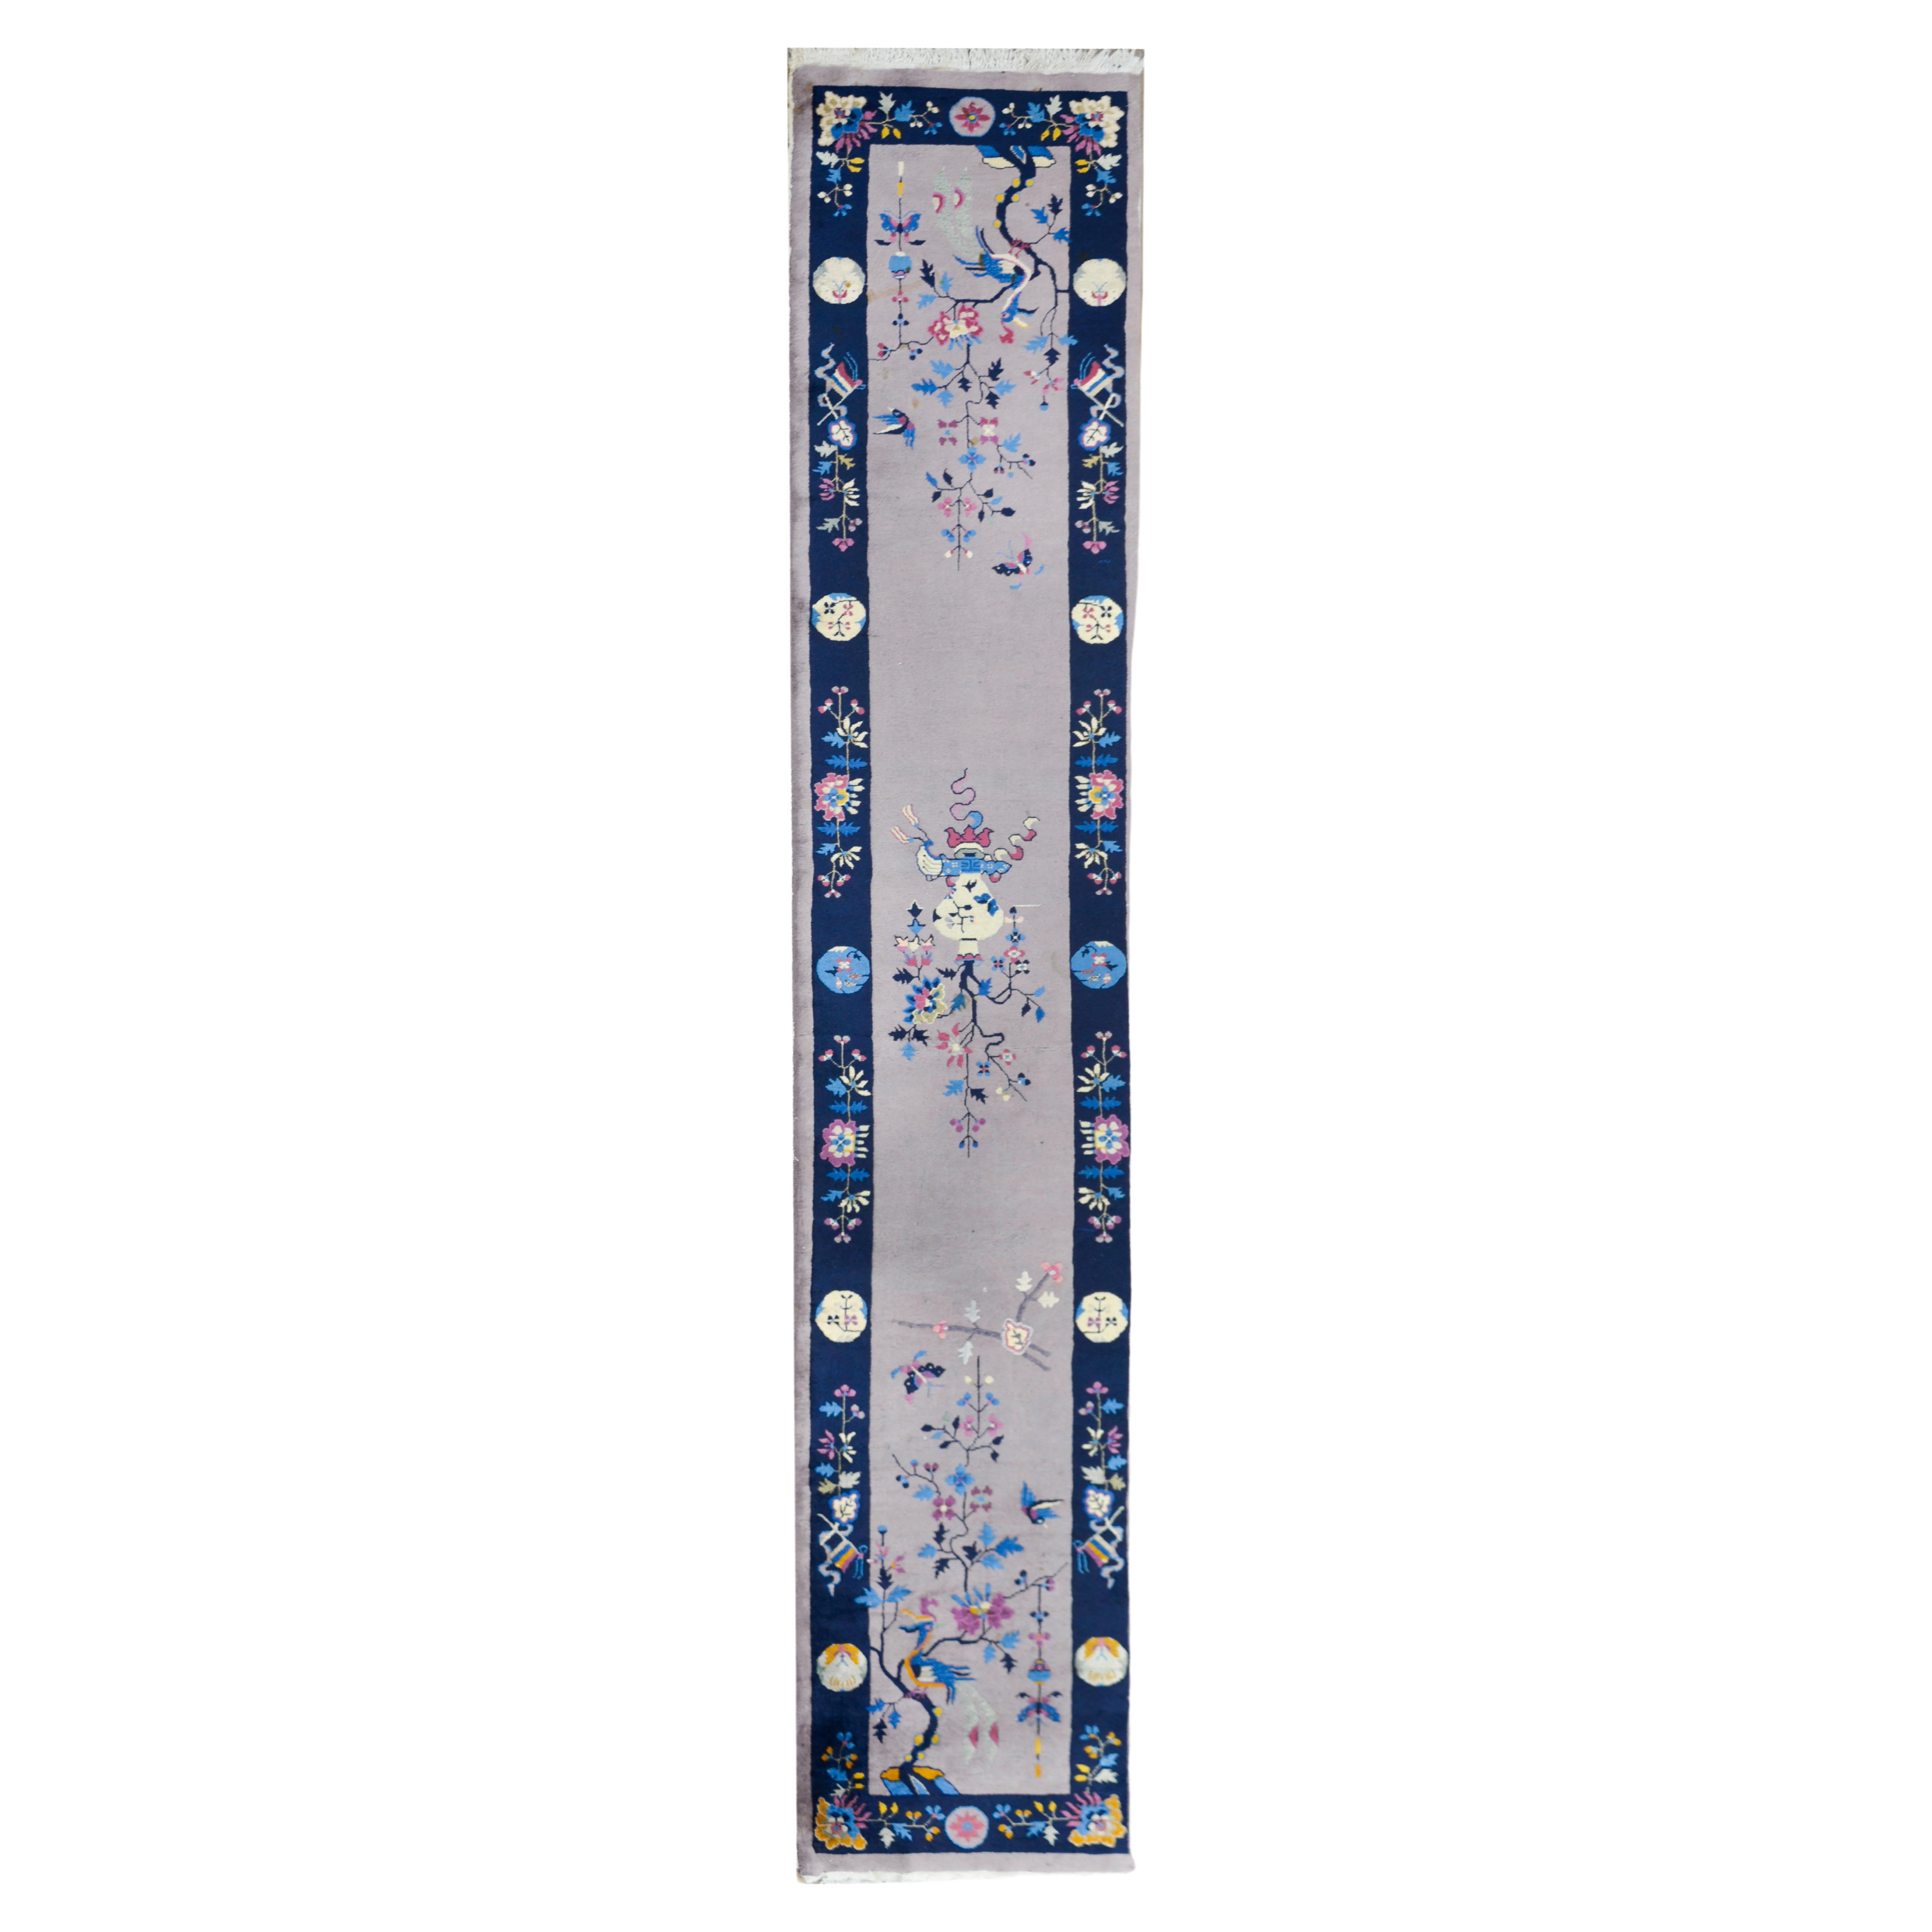 Chinesischer Art-déco-Teppich des frühen 20. Jahrhunderts